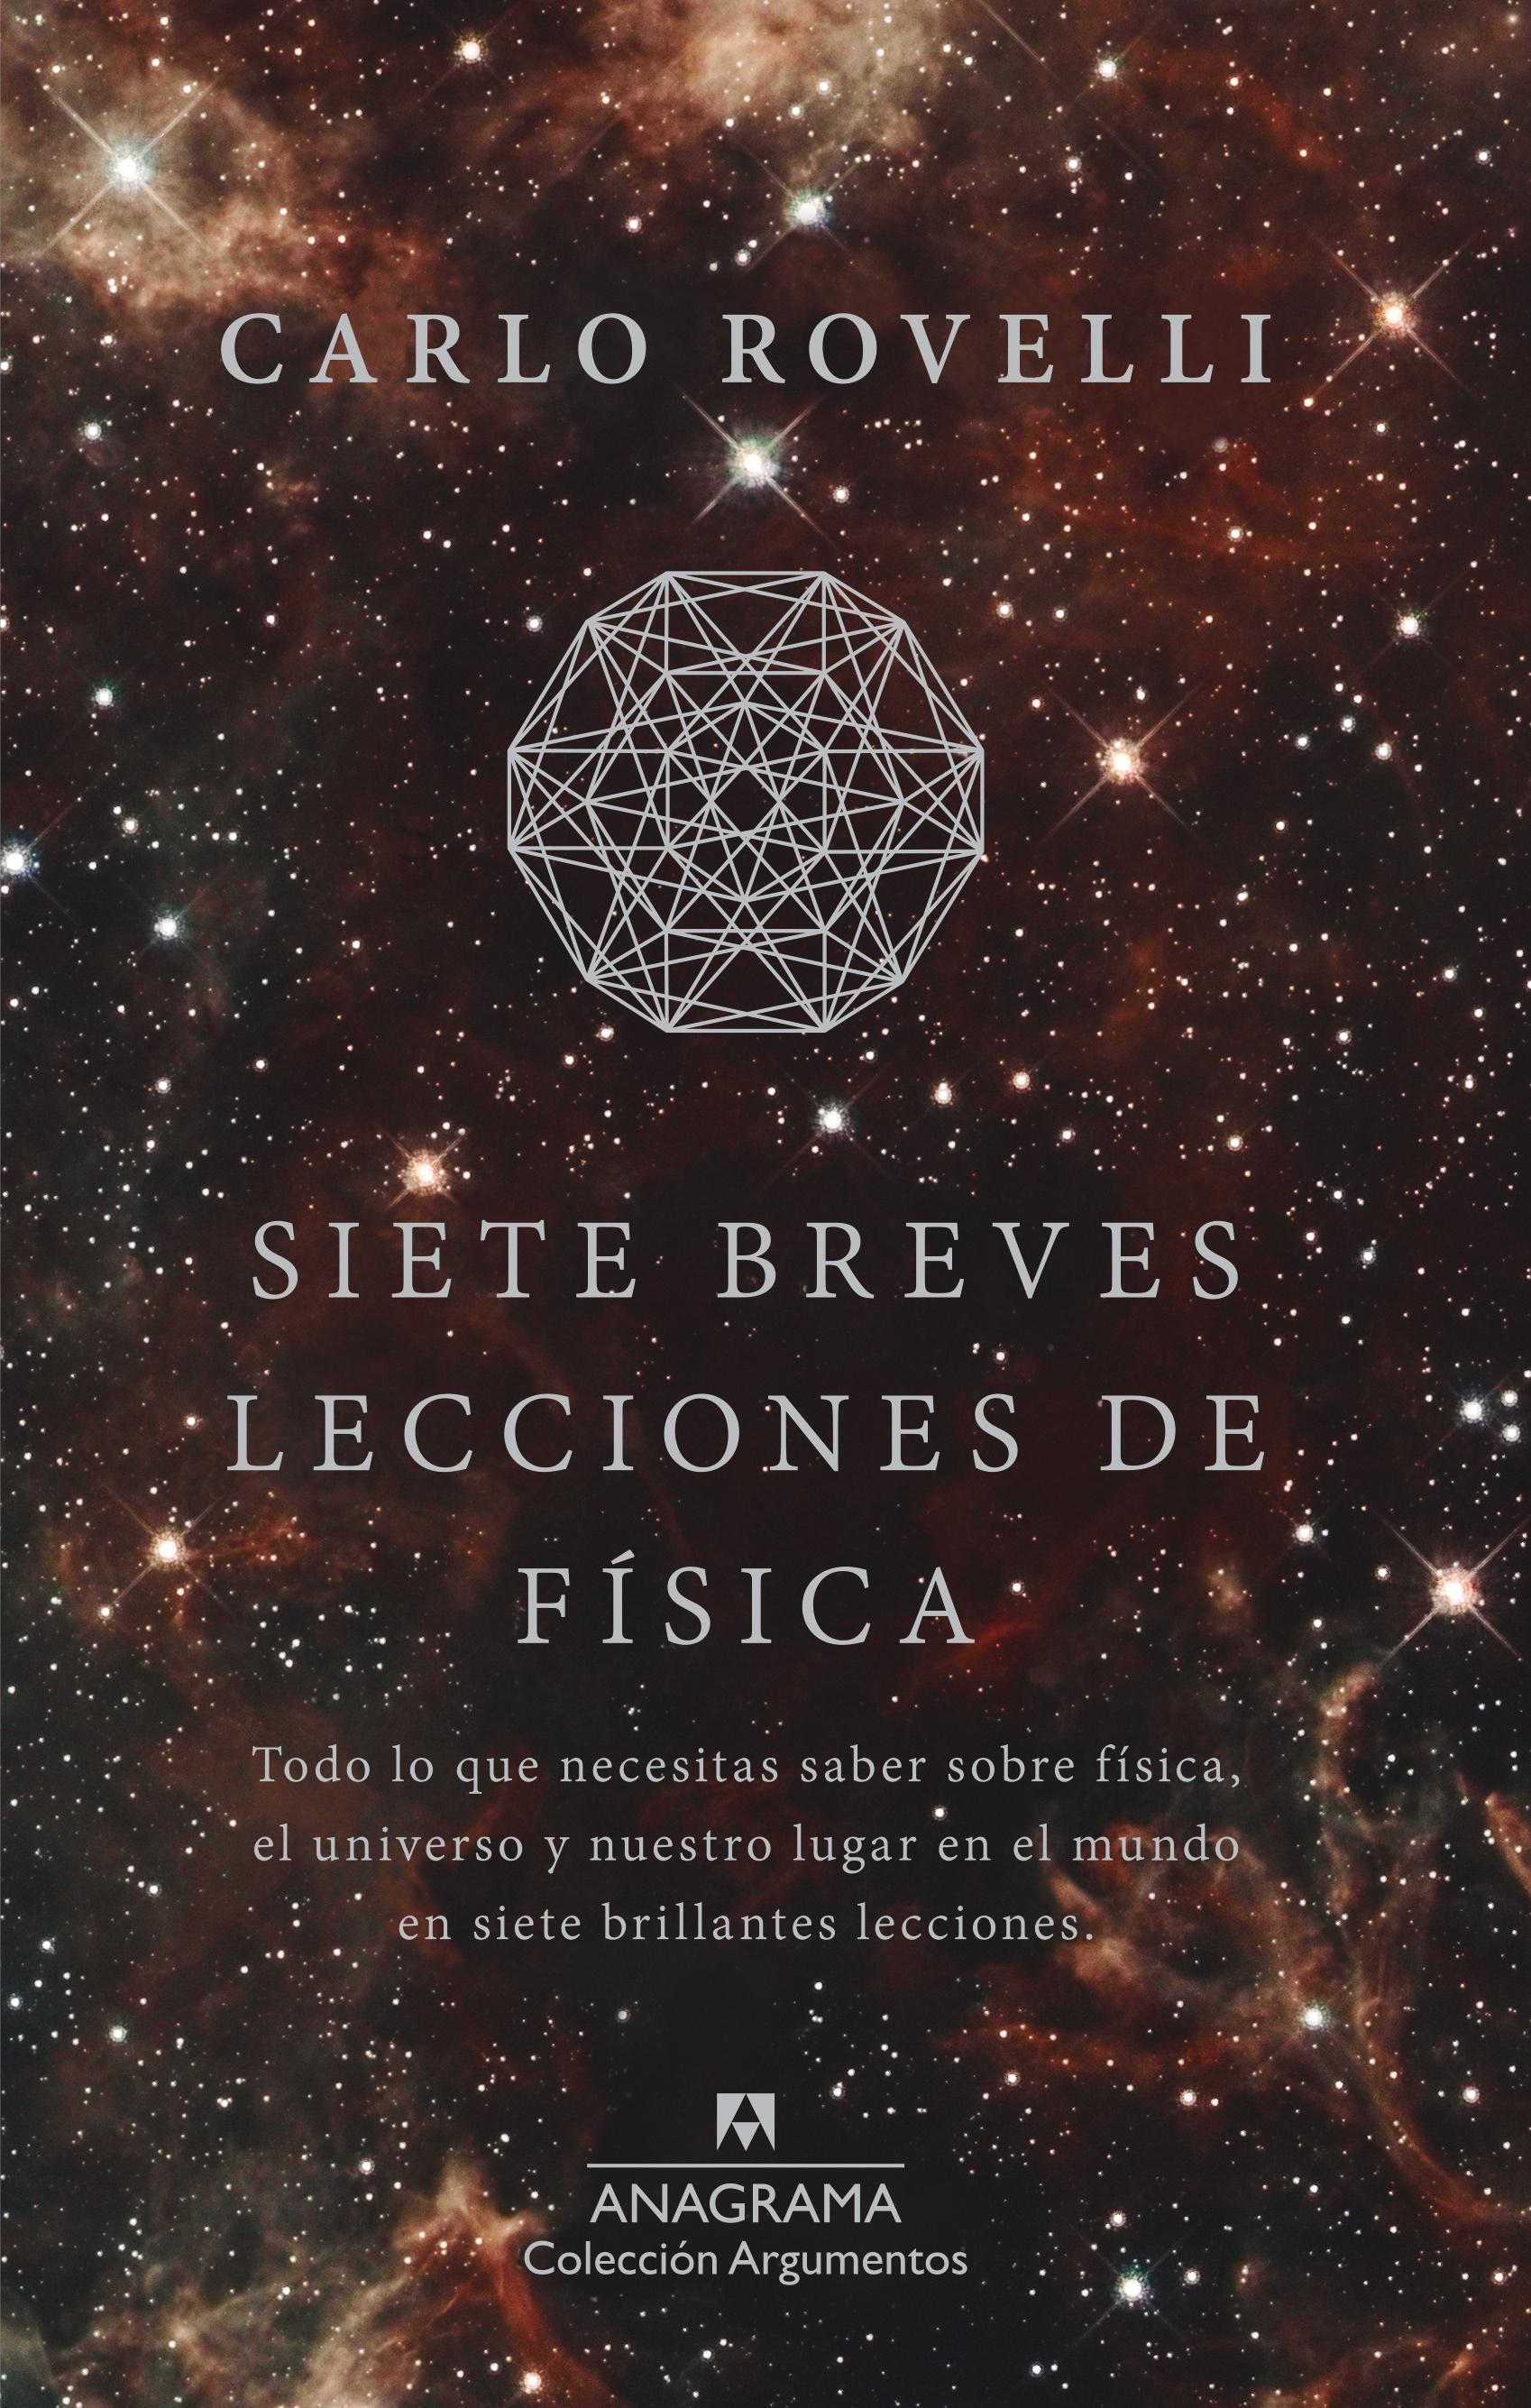 Siete Breves Lecciones de Física "Todo lo que Necesitas Saber sobre Física, el Universo y nuestro Lugar en el Mundo en 7 Brillantes Leccio". 